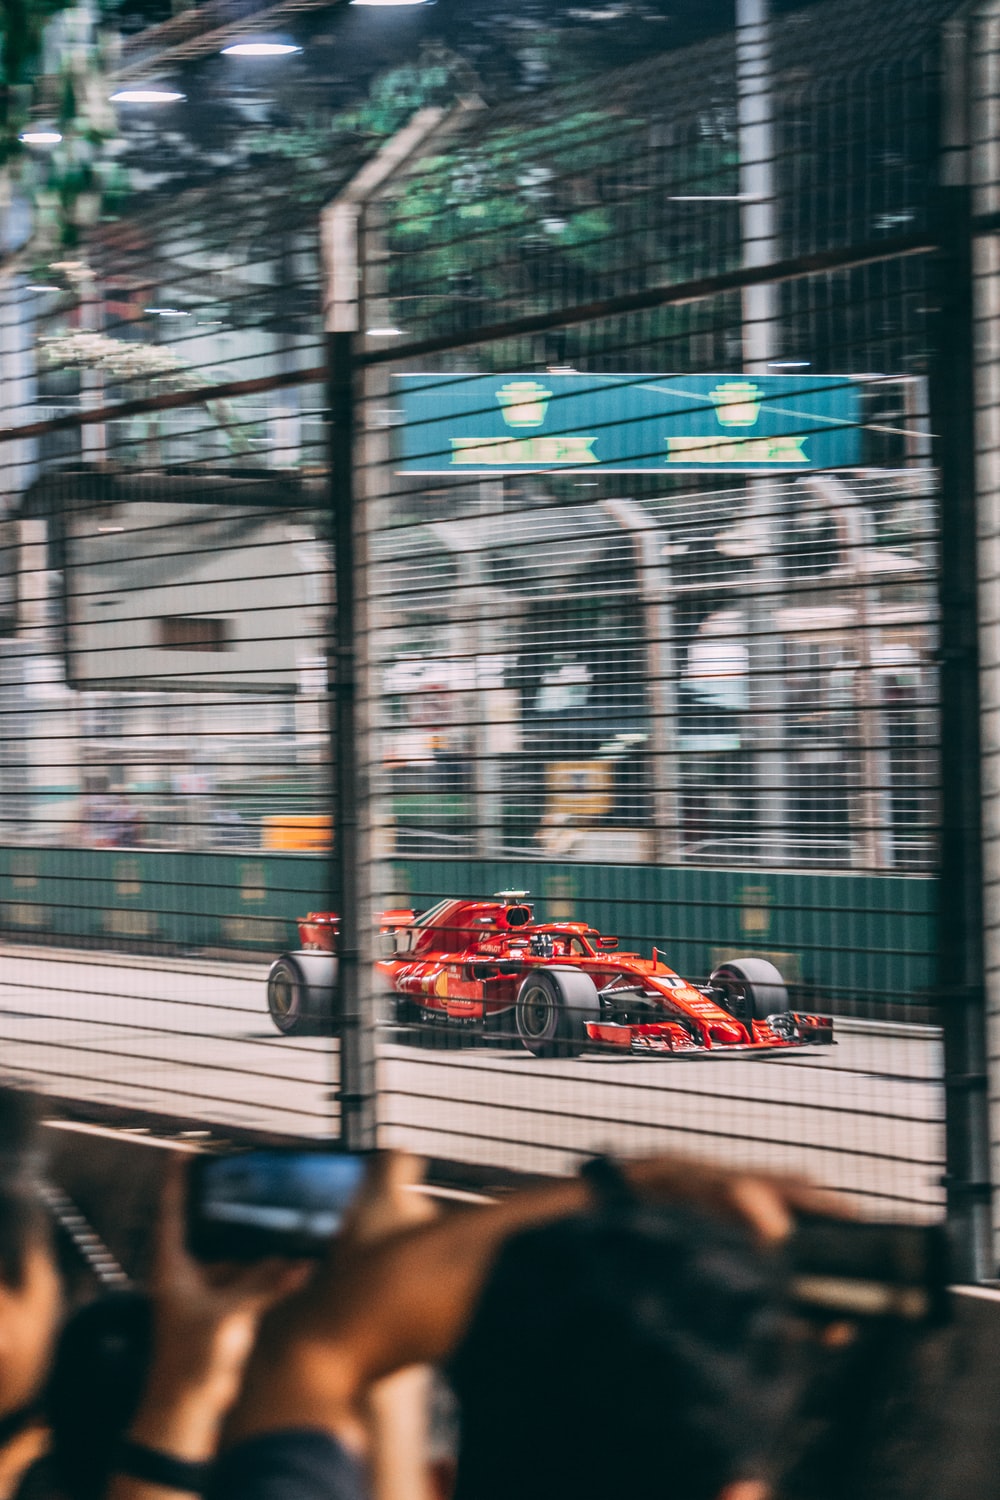 Ferrari F1 Picture. Download Free Image